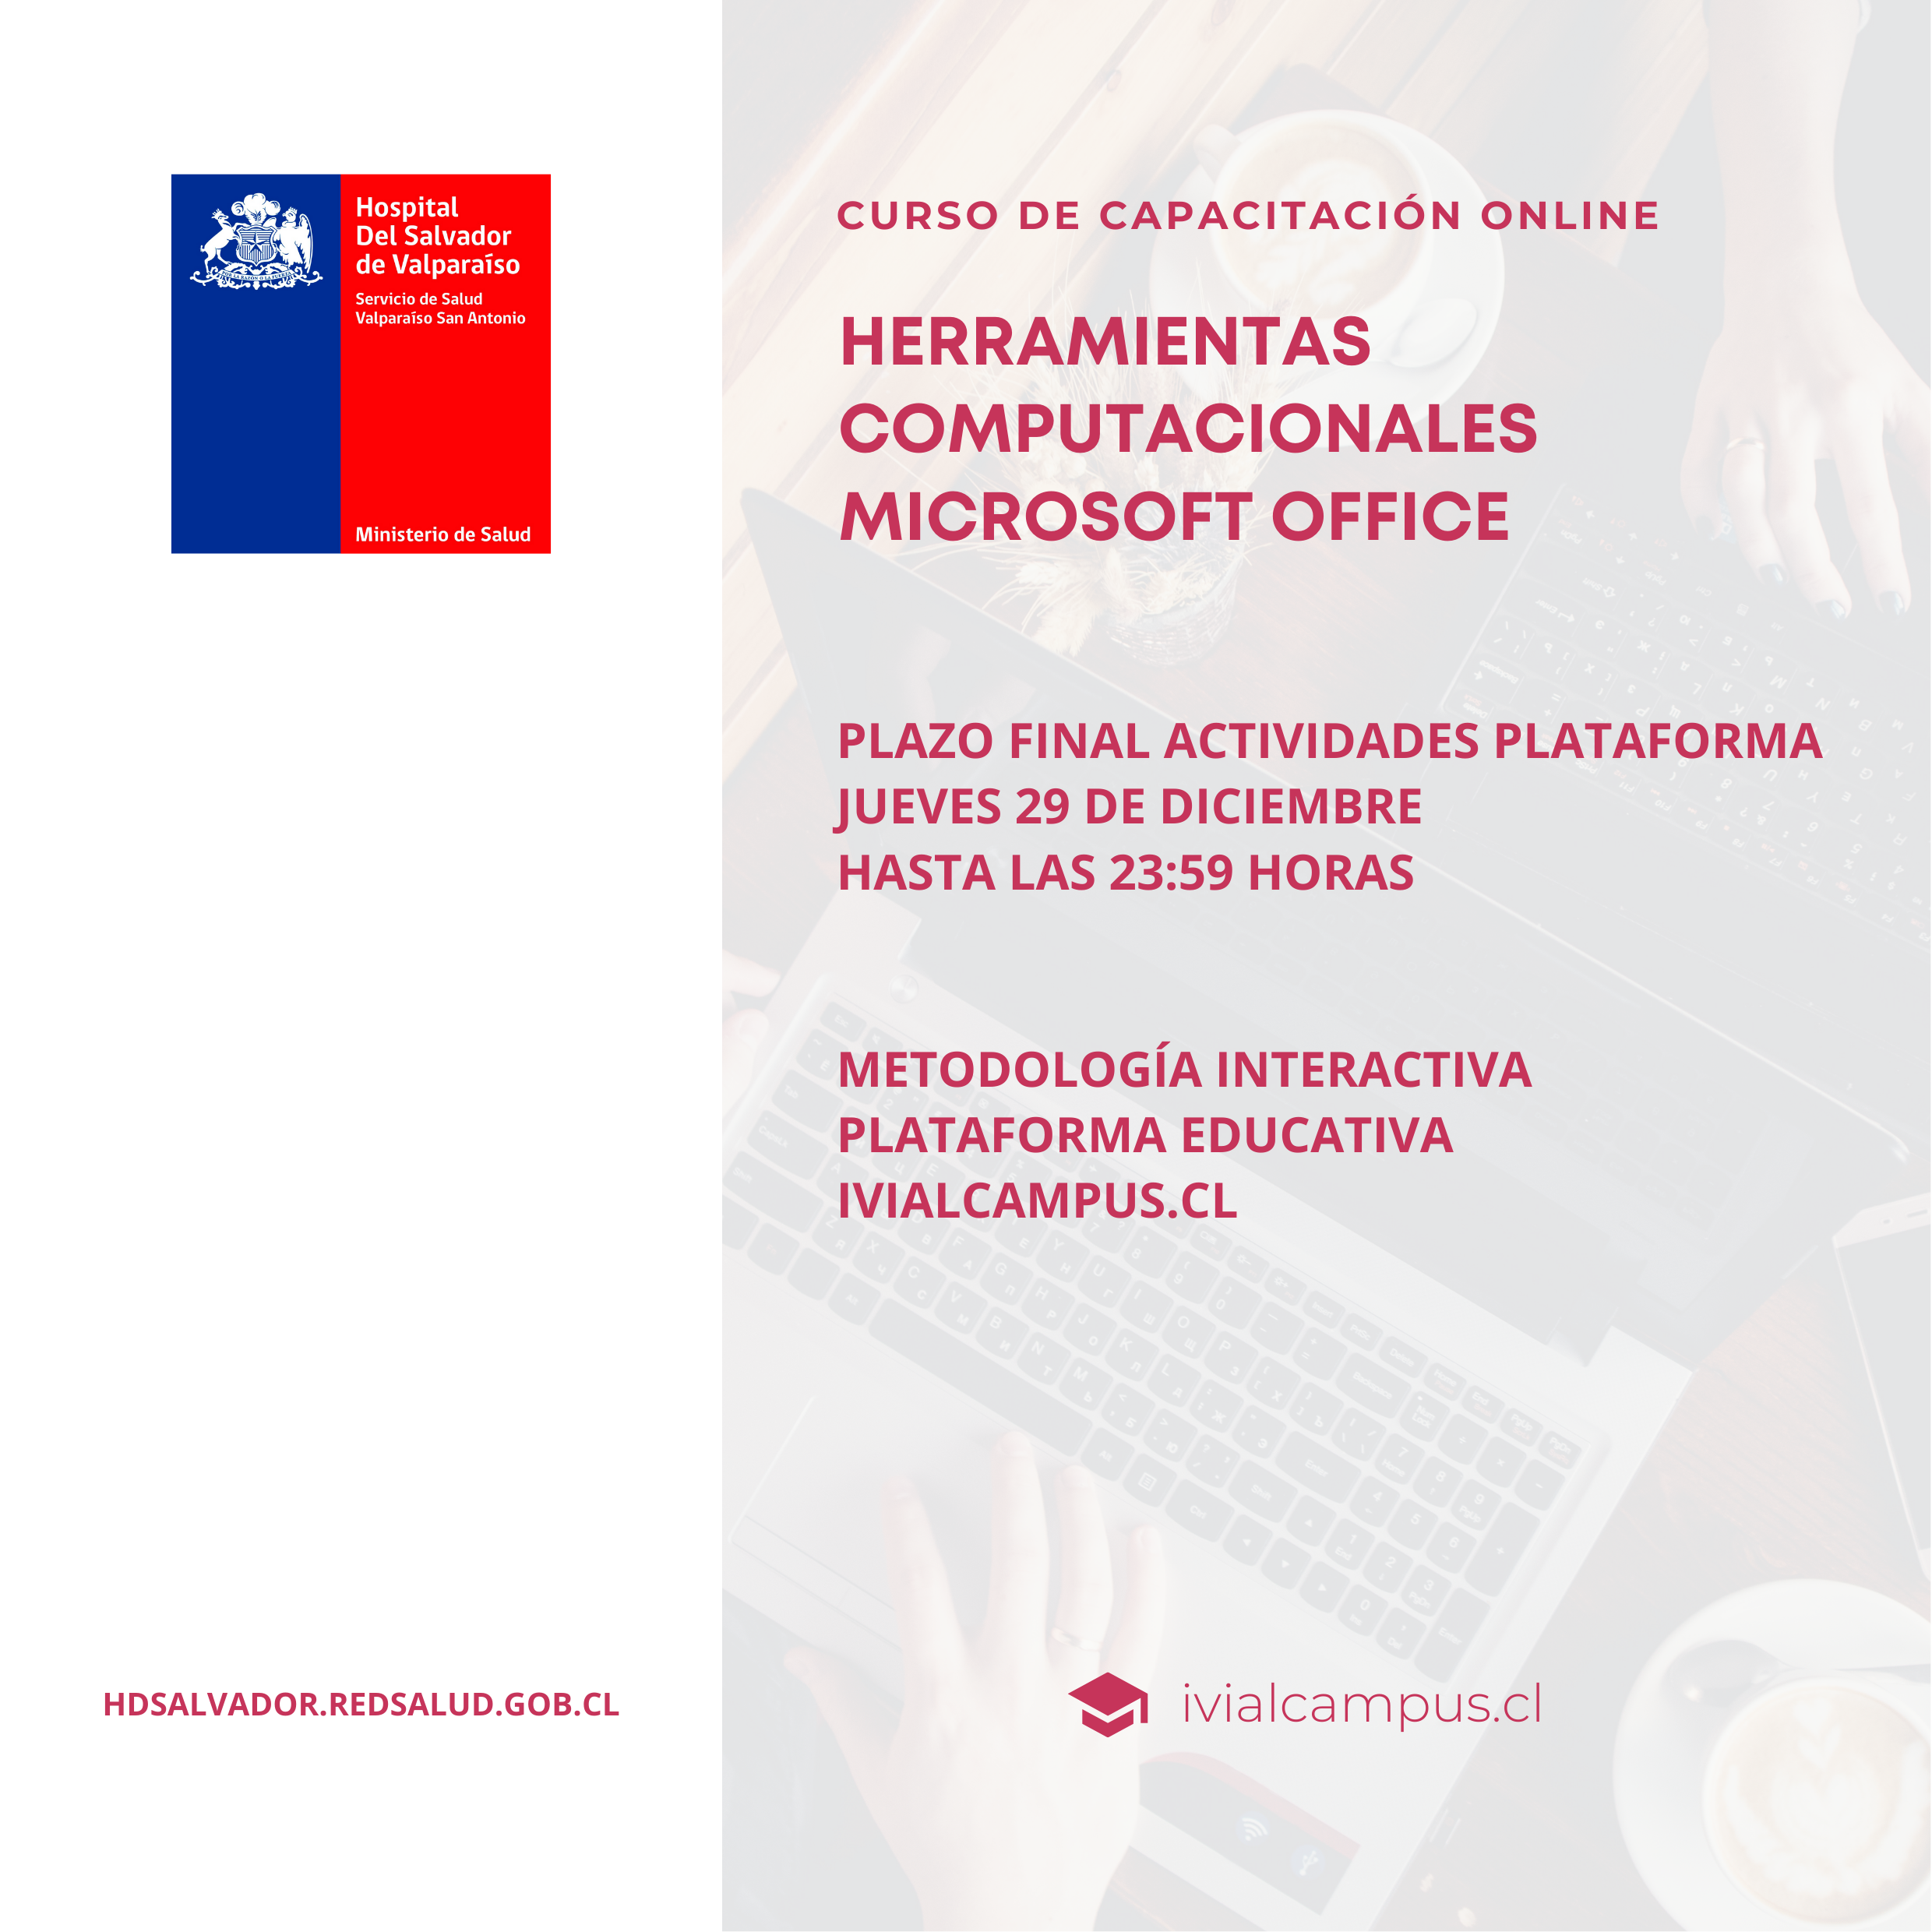 HOSPITAL PSIQUIÁTRICO DEL SALVADOR: Herramientas Computacionales Microsoft Office